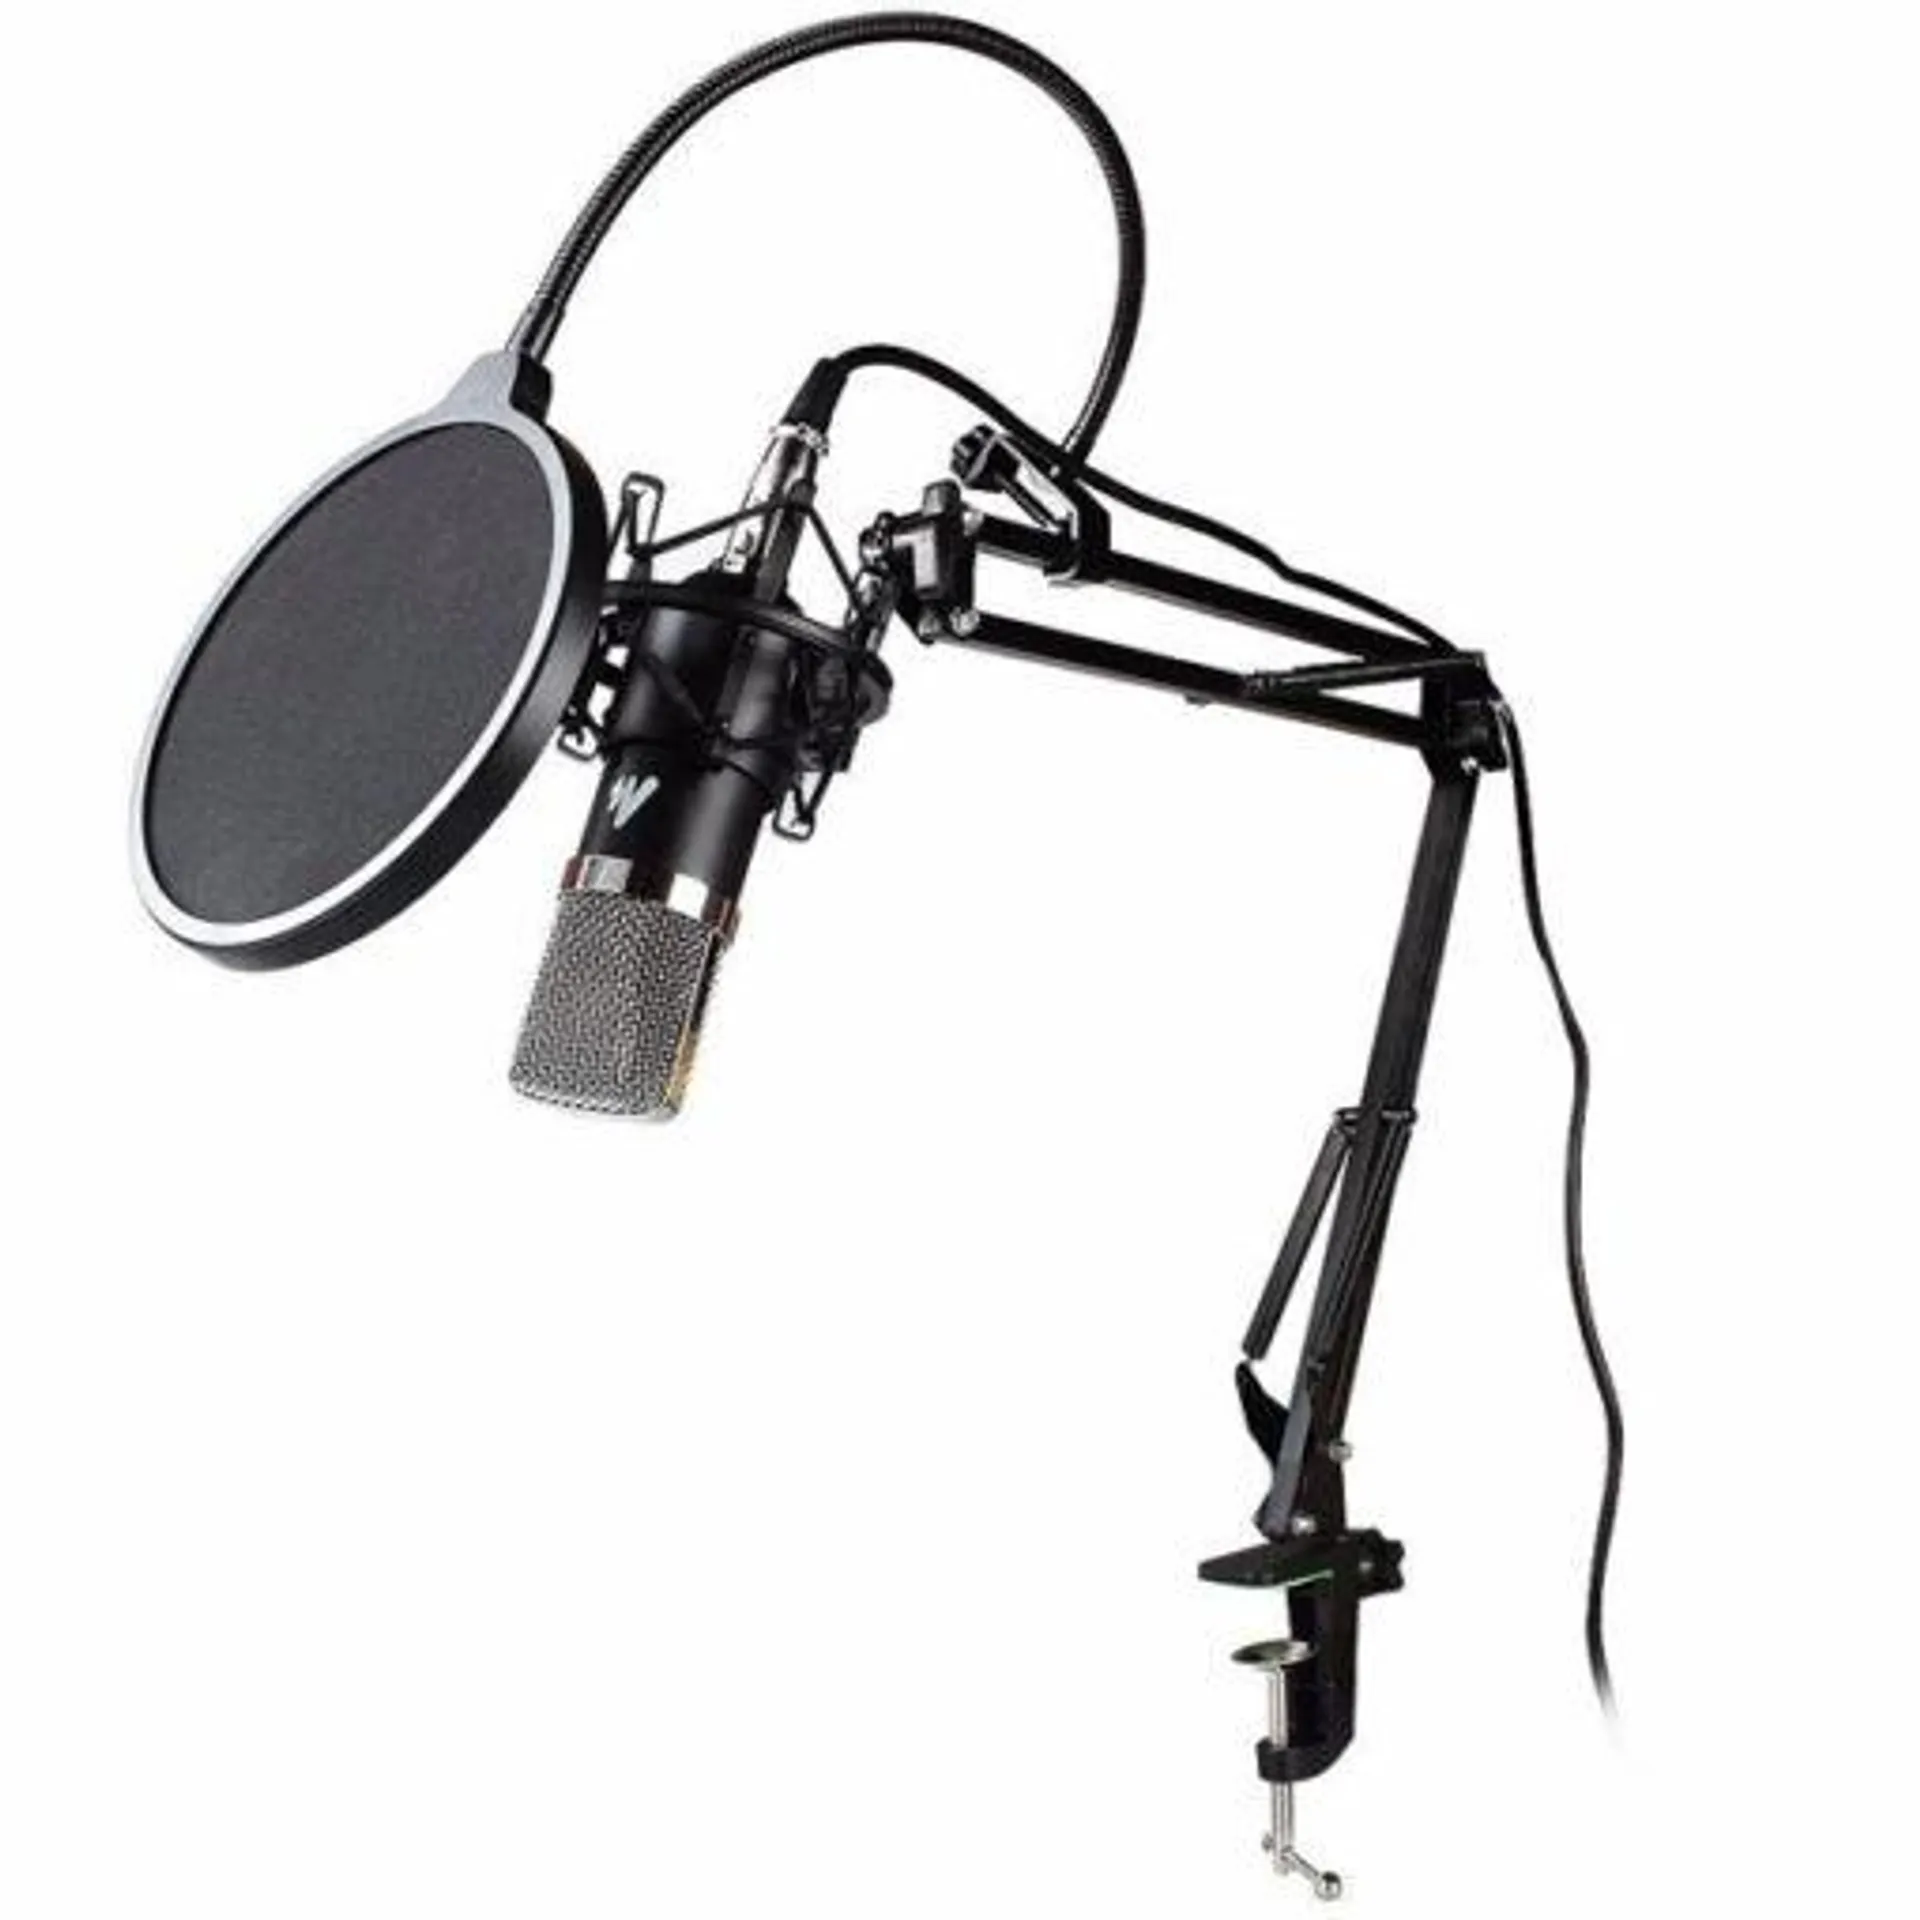 MAONO AU-A03 Microphone Kit